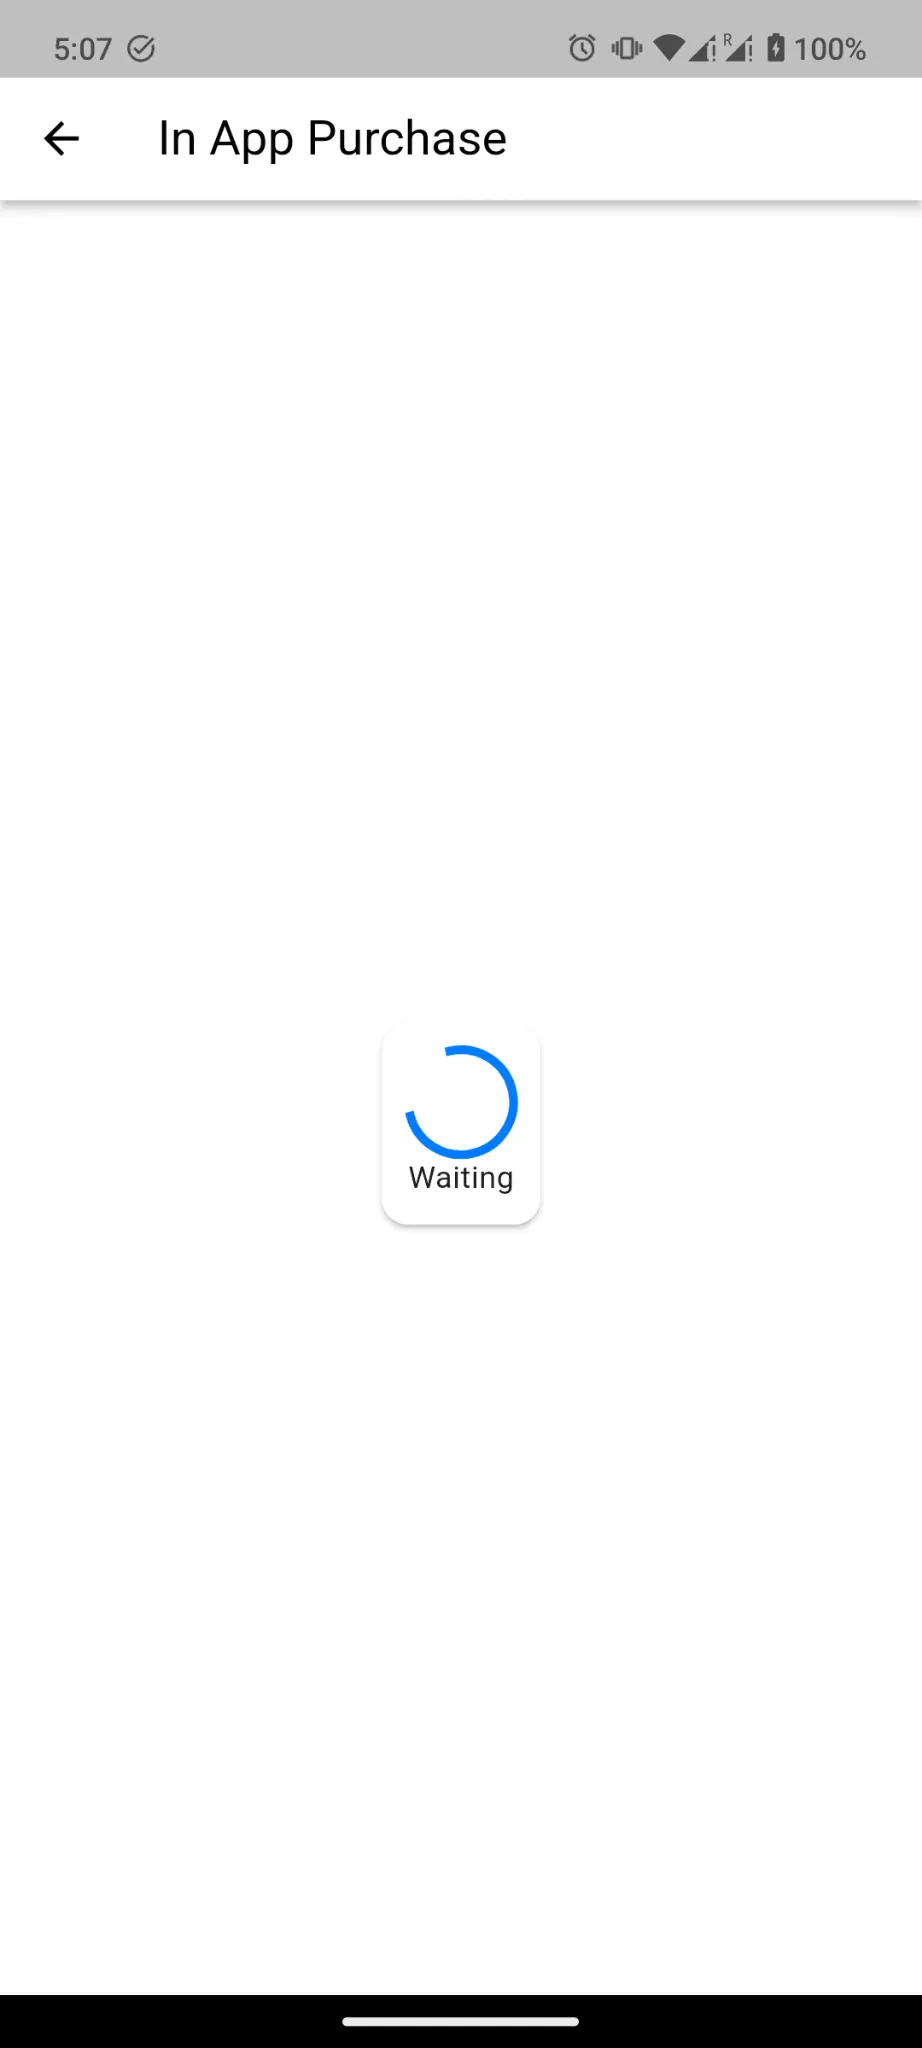 Een screenshot van de app die wacht tot de in app aankoop is voltooid.